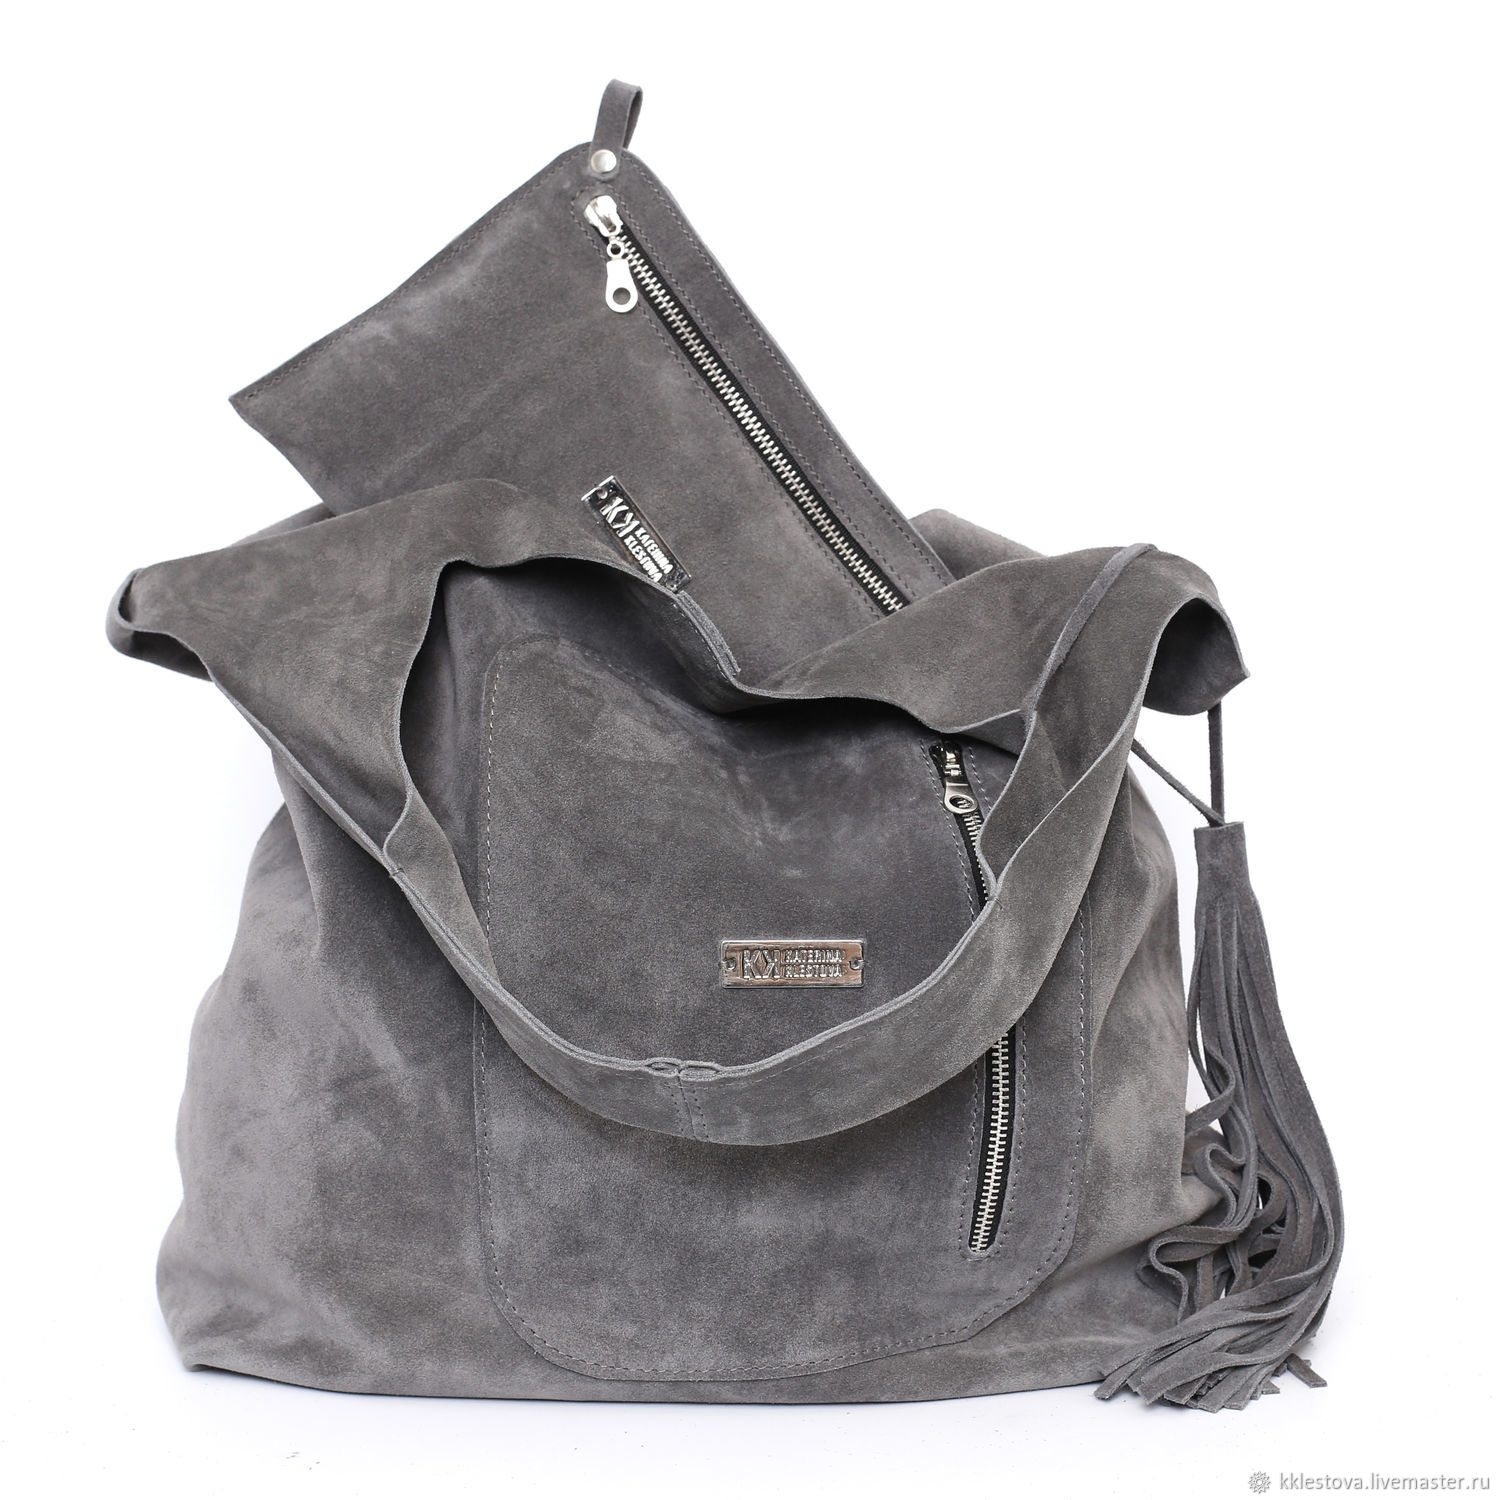 grey suede handbag